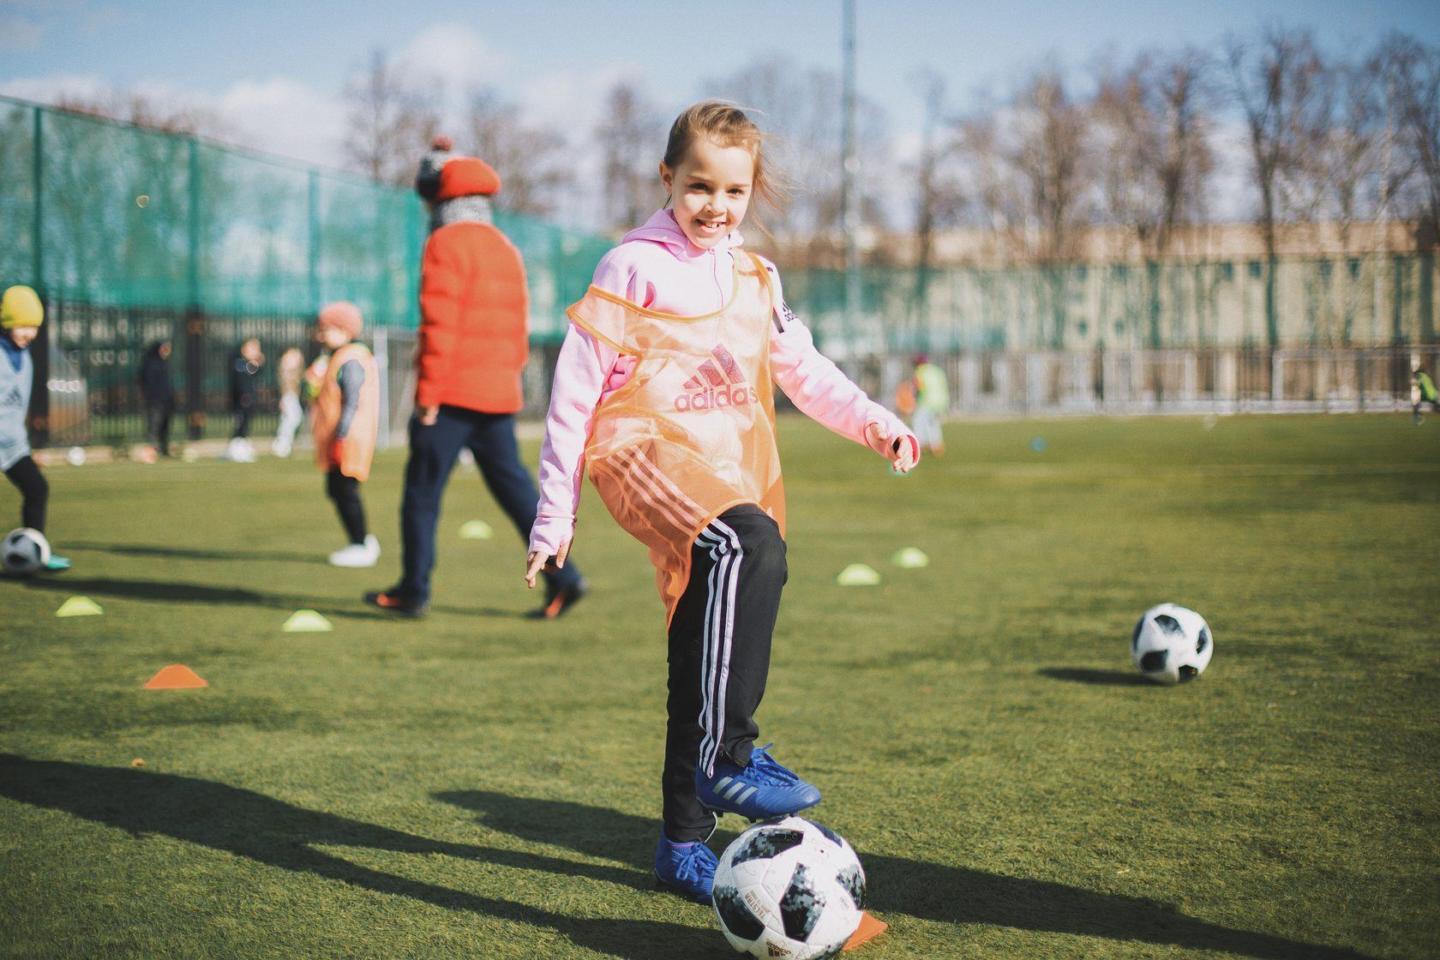 «Это весело и клёво»: женская школа футбола GirlPower и adidas организуют футбольные тренировки для девочек. Изображение номер 2